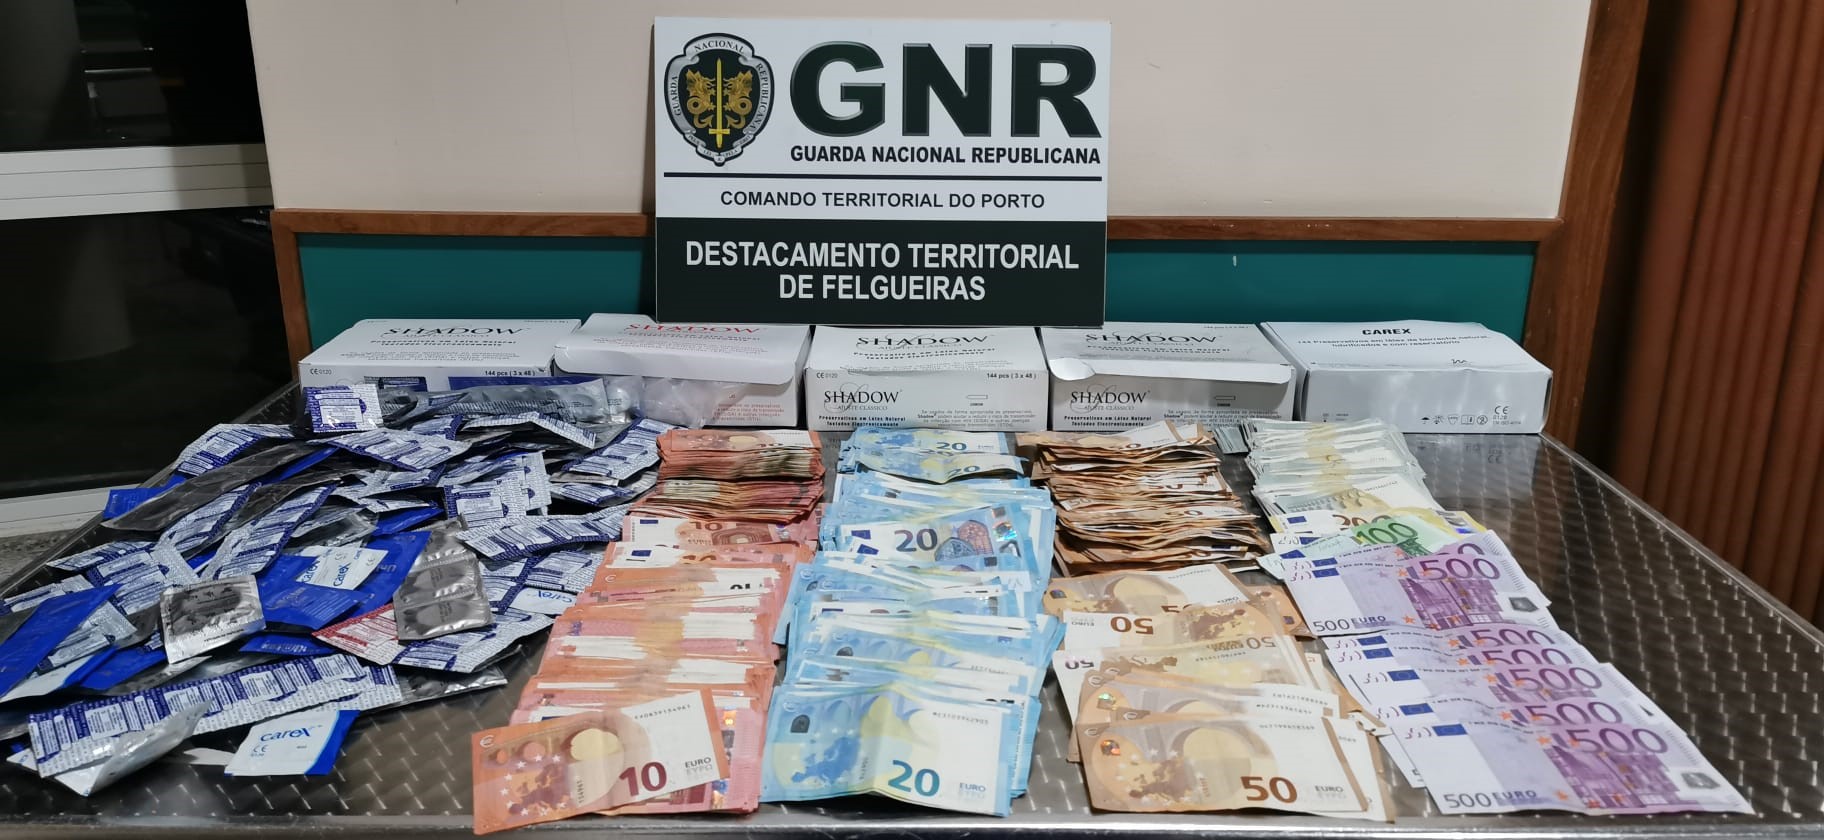 GNR Porto Lenocinio